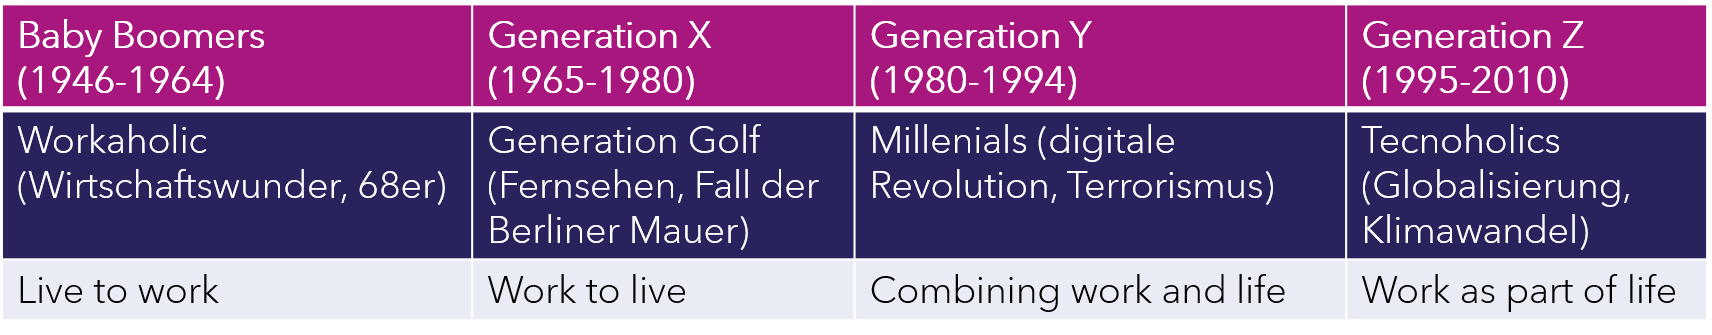 Generationen Unterschiede